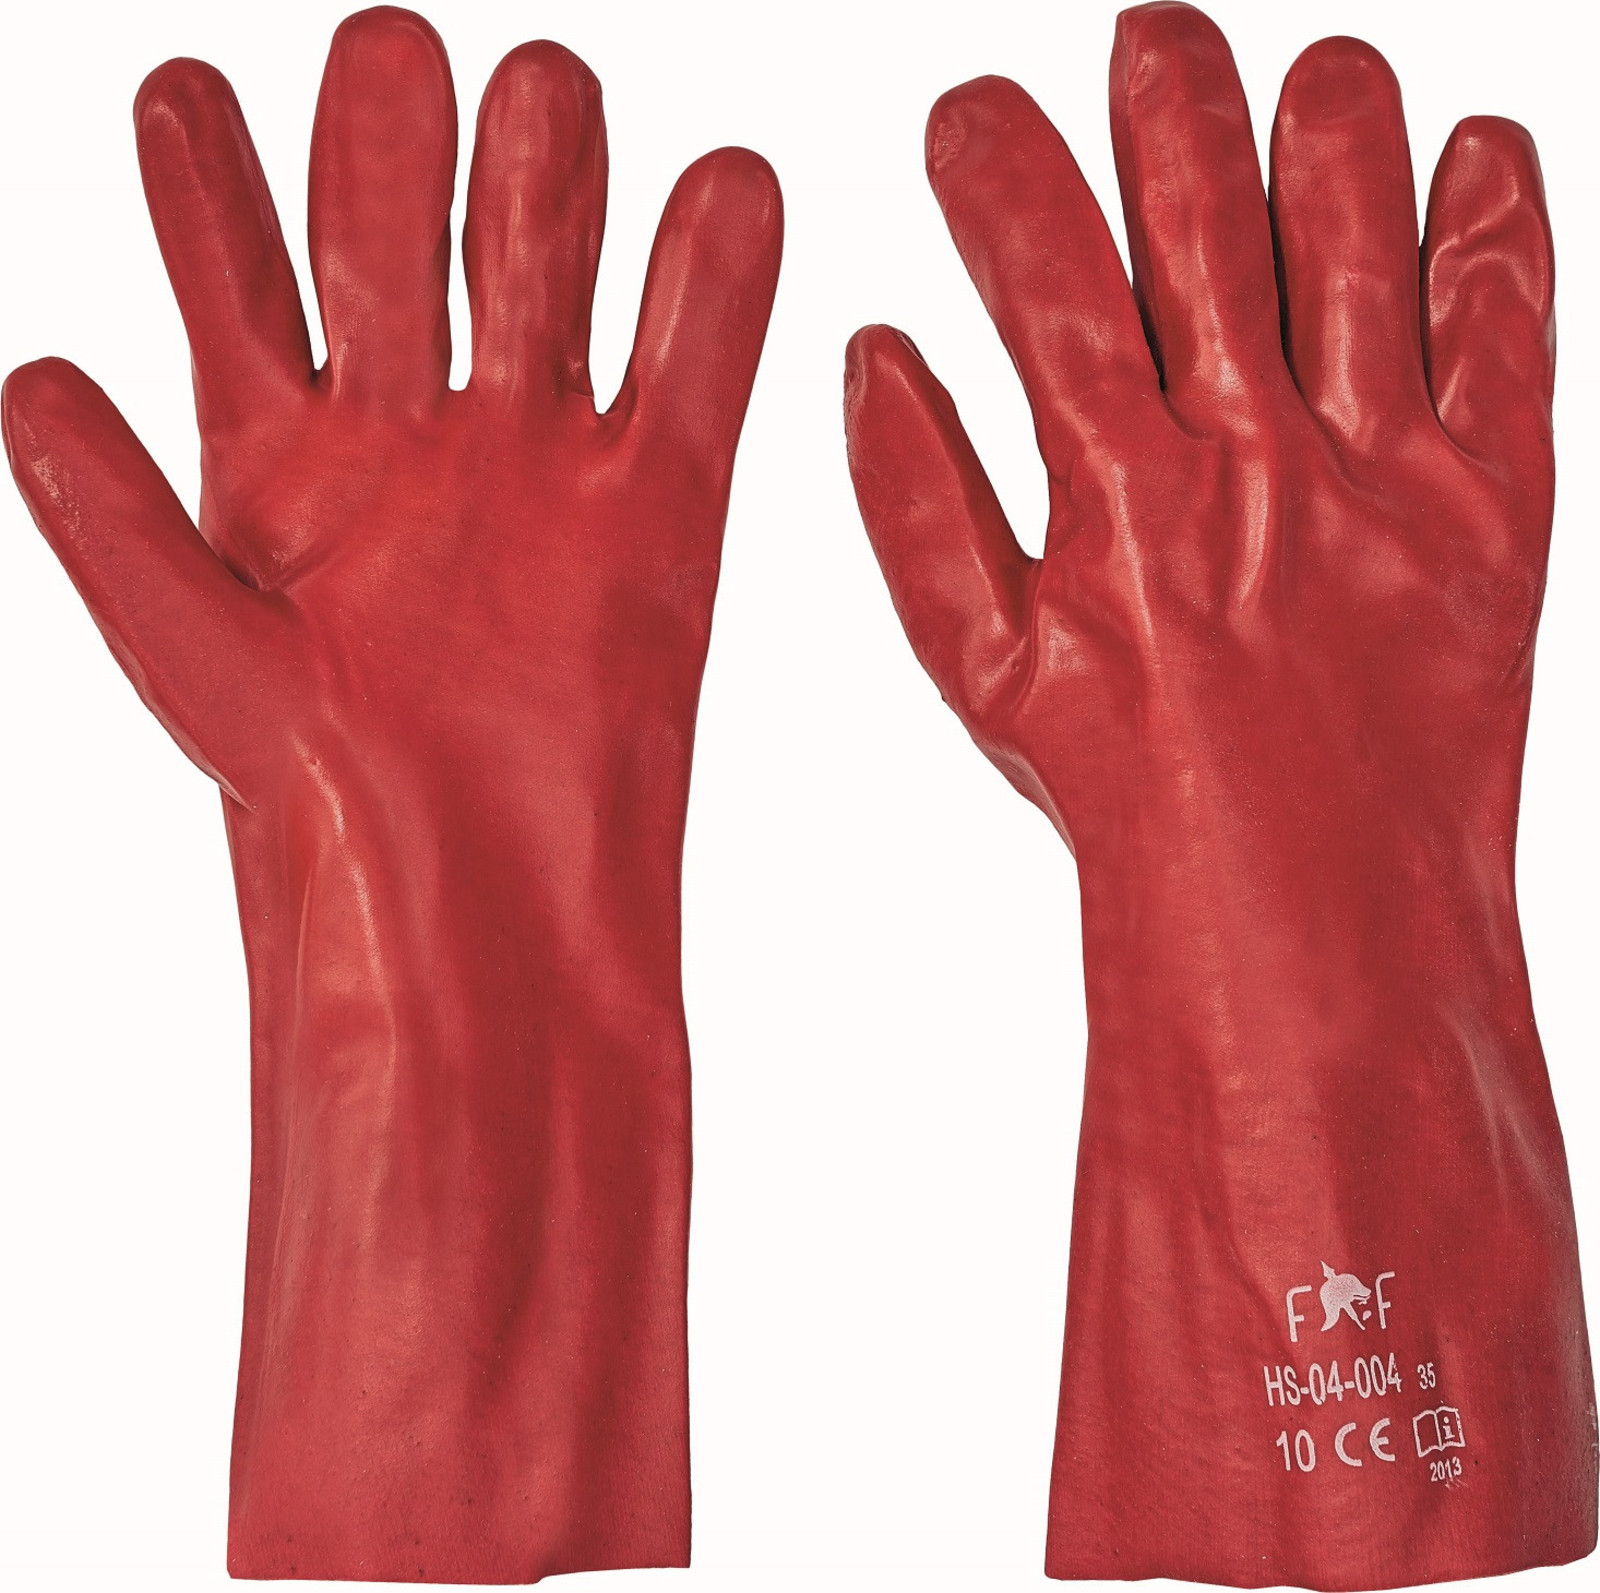 Pracovné rukavice Redstart light HS 04-004 - veľkosť: 10/XL